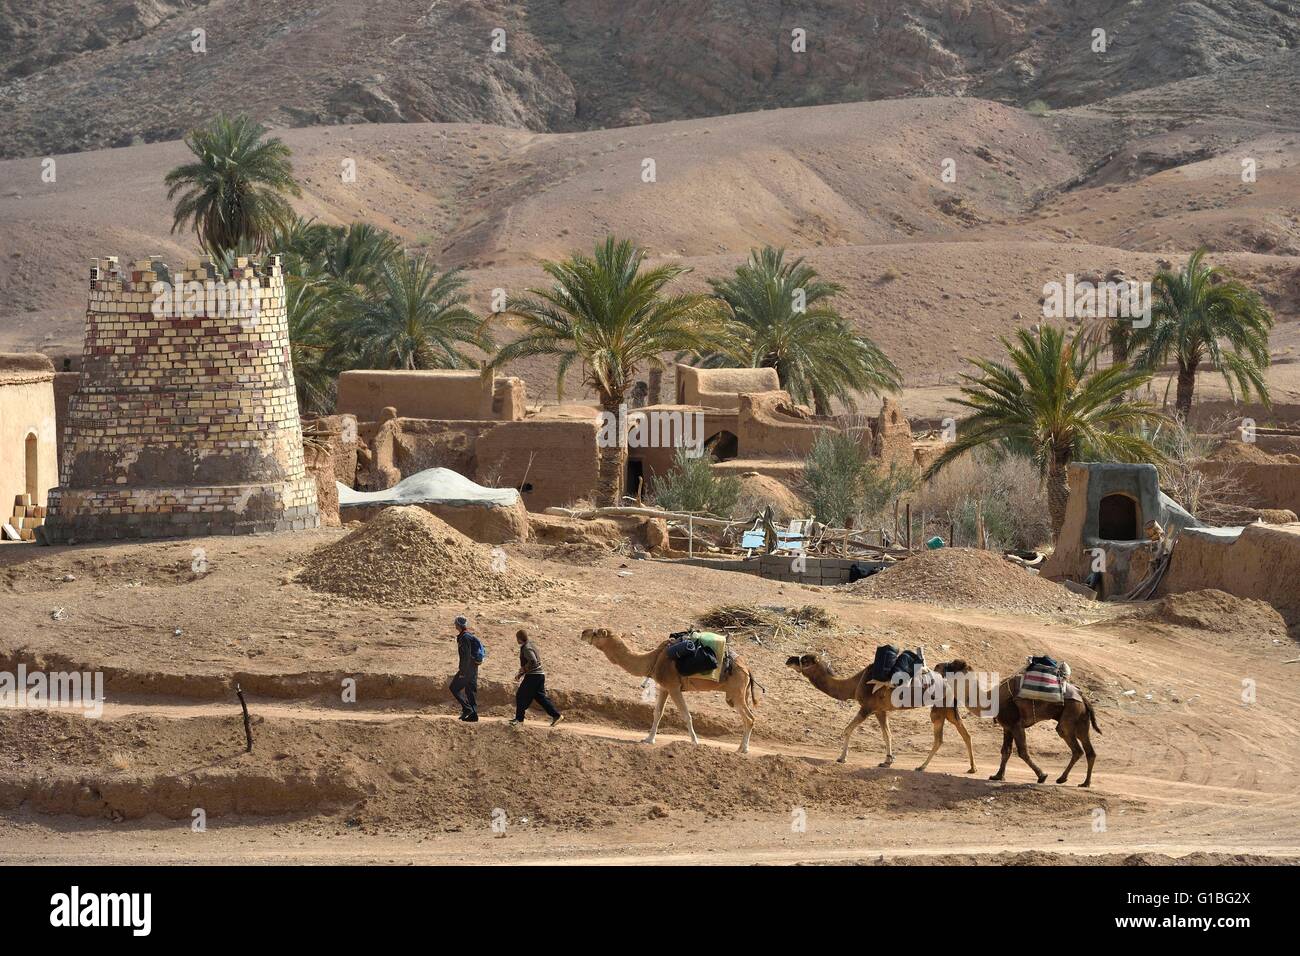 Résultat de recherche d'images pour "désert du Dasht-e Kavir"